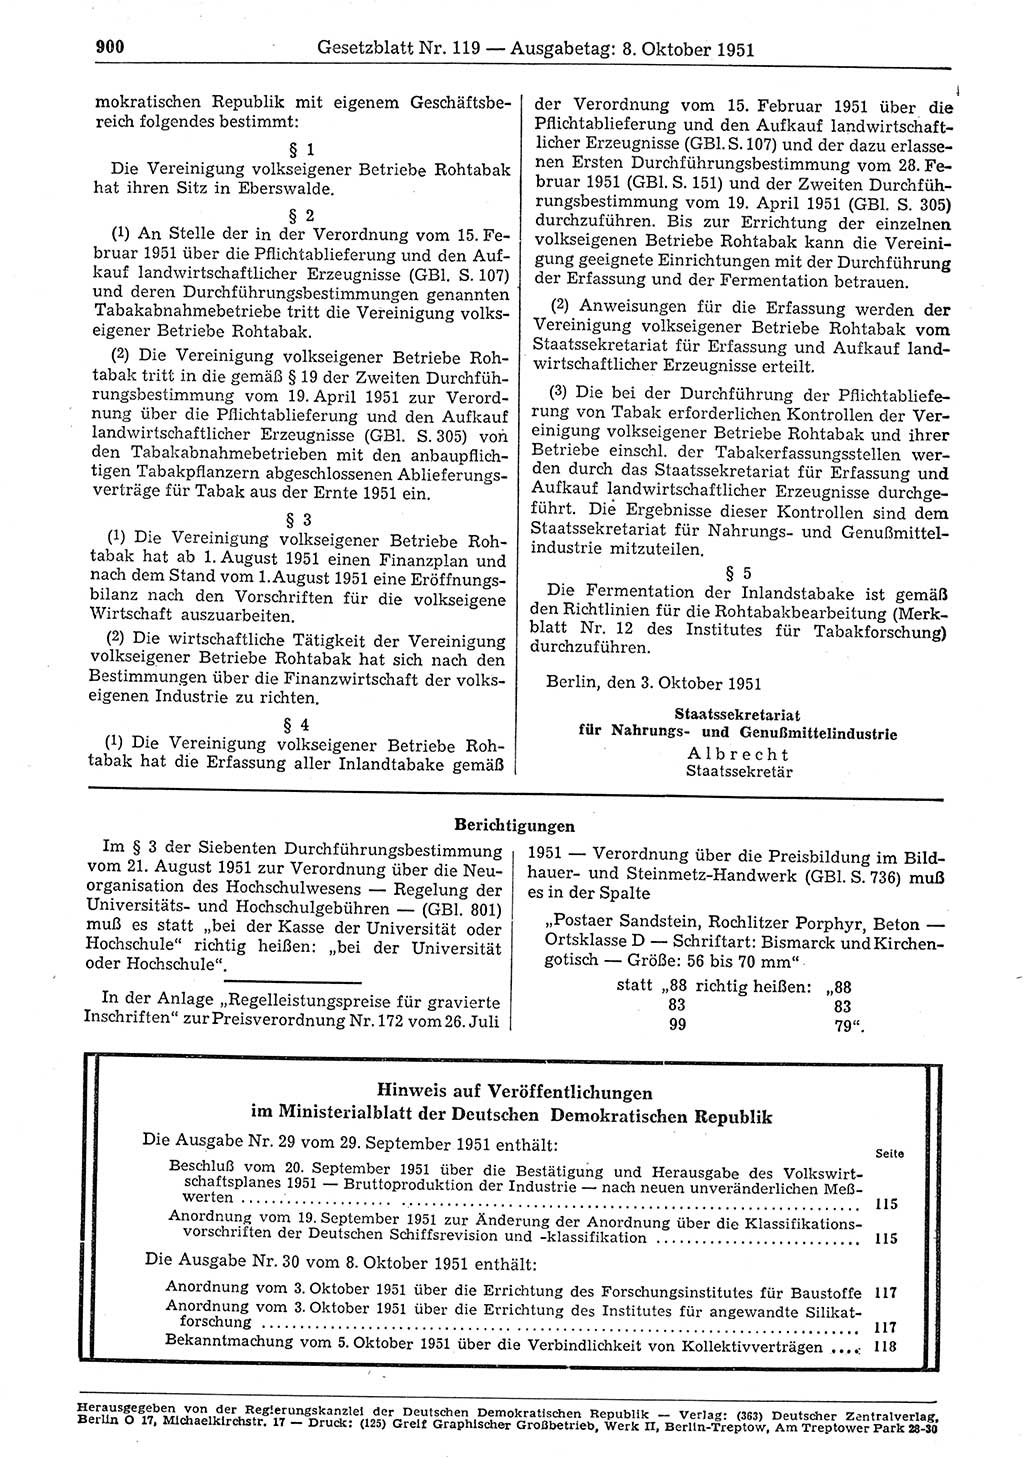 Gesetzblatt (GBl.) der Deutschen Demokratischen Republik (DDR) 1951, Seite 900 (GBl. DDR 1951, S. 900)